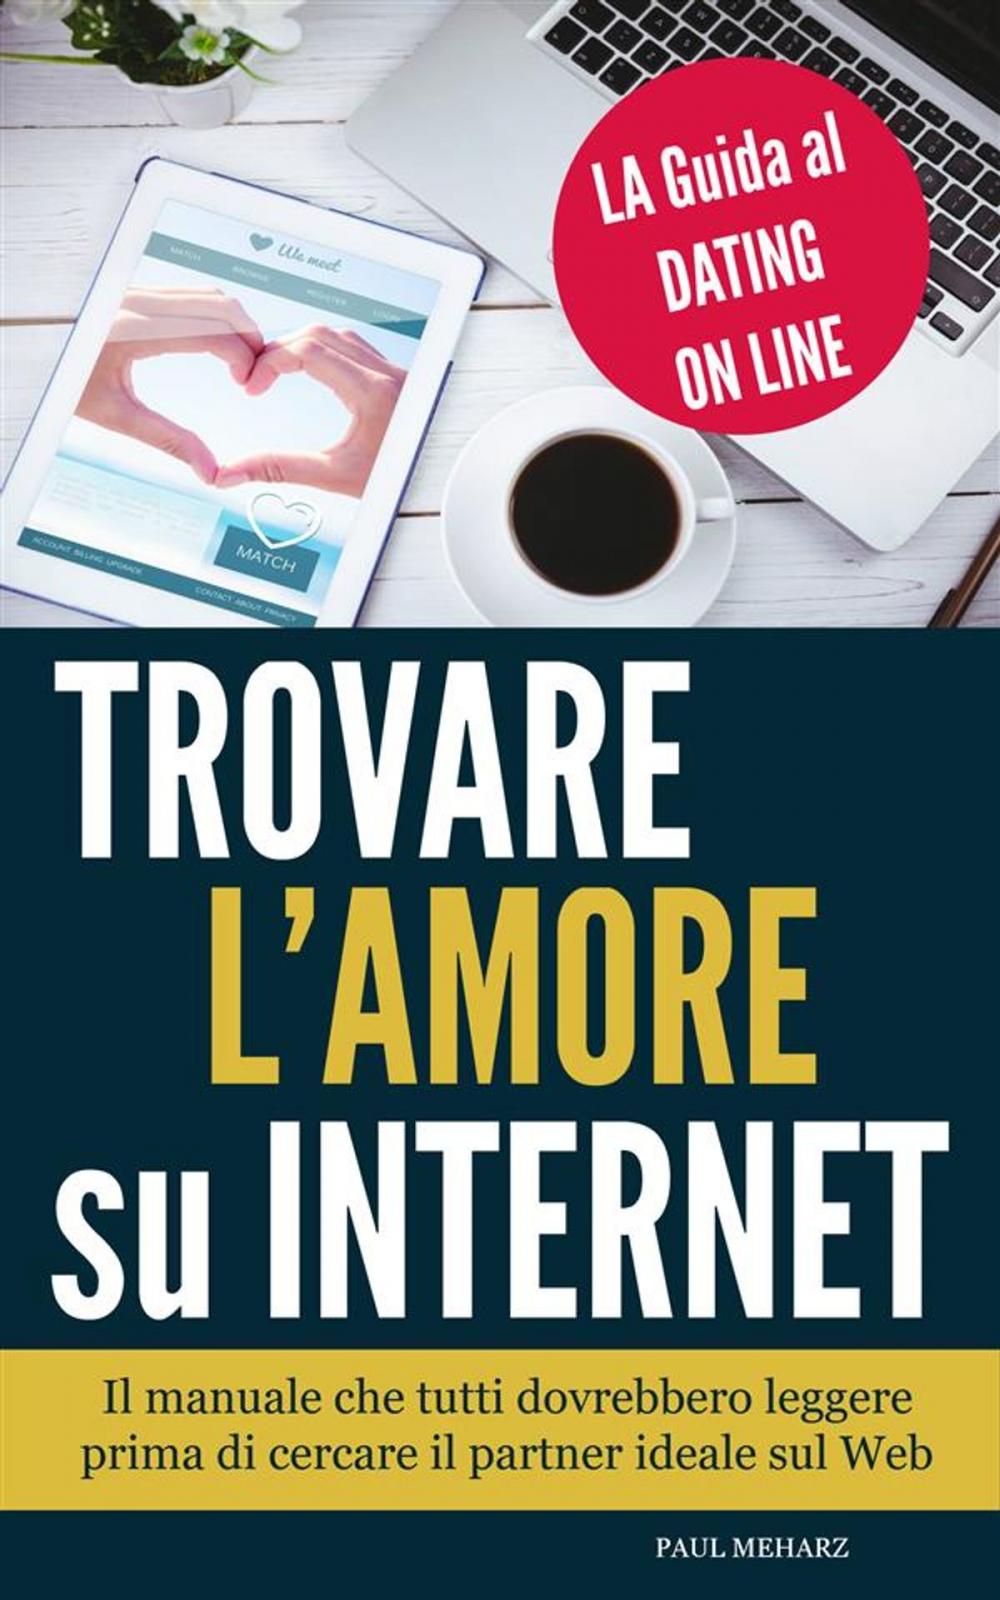 Big bigCover of Trovare l'Amore su Internet - LA Guida al Dating On Line